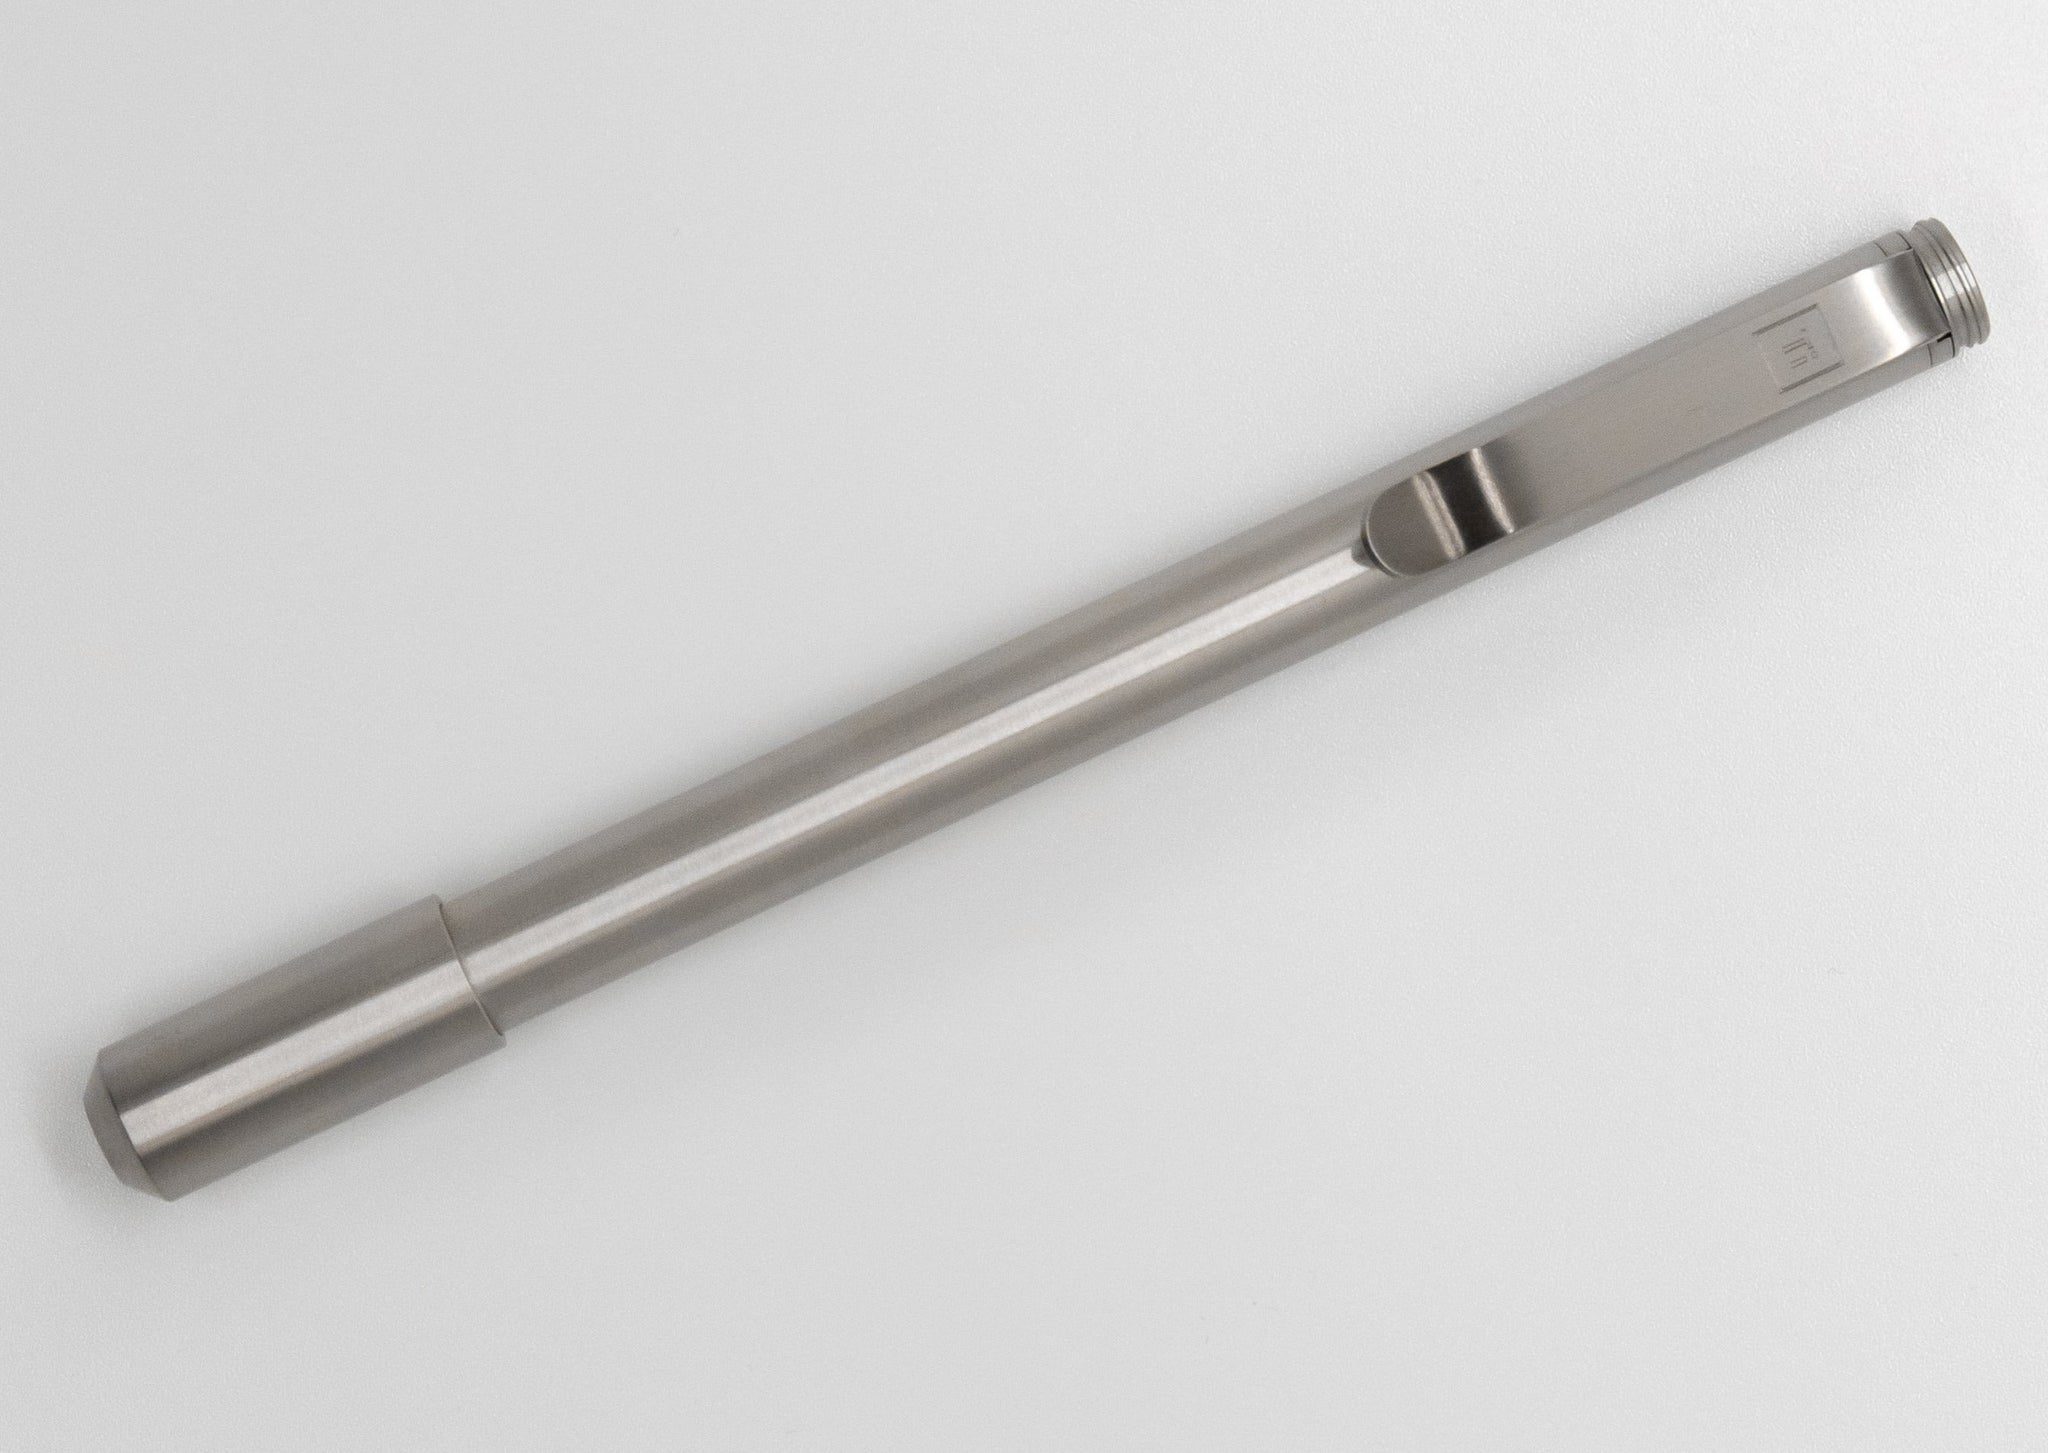 Big Idea Design – PHX Pen (ein zeitloser Edelstahlstift)